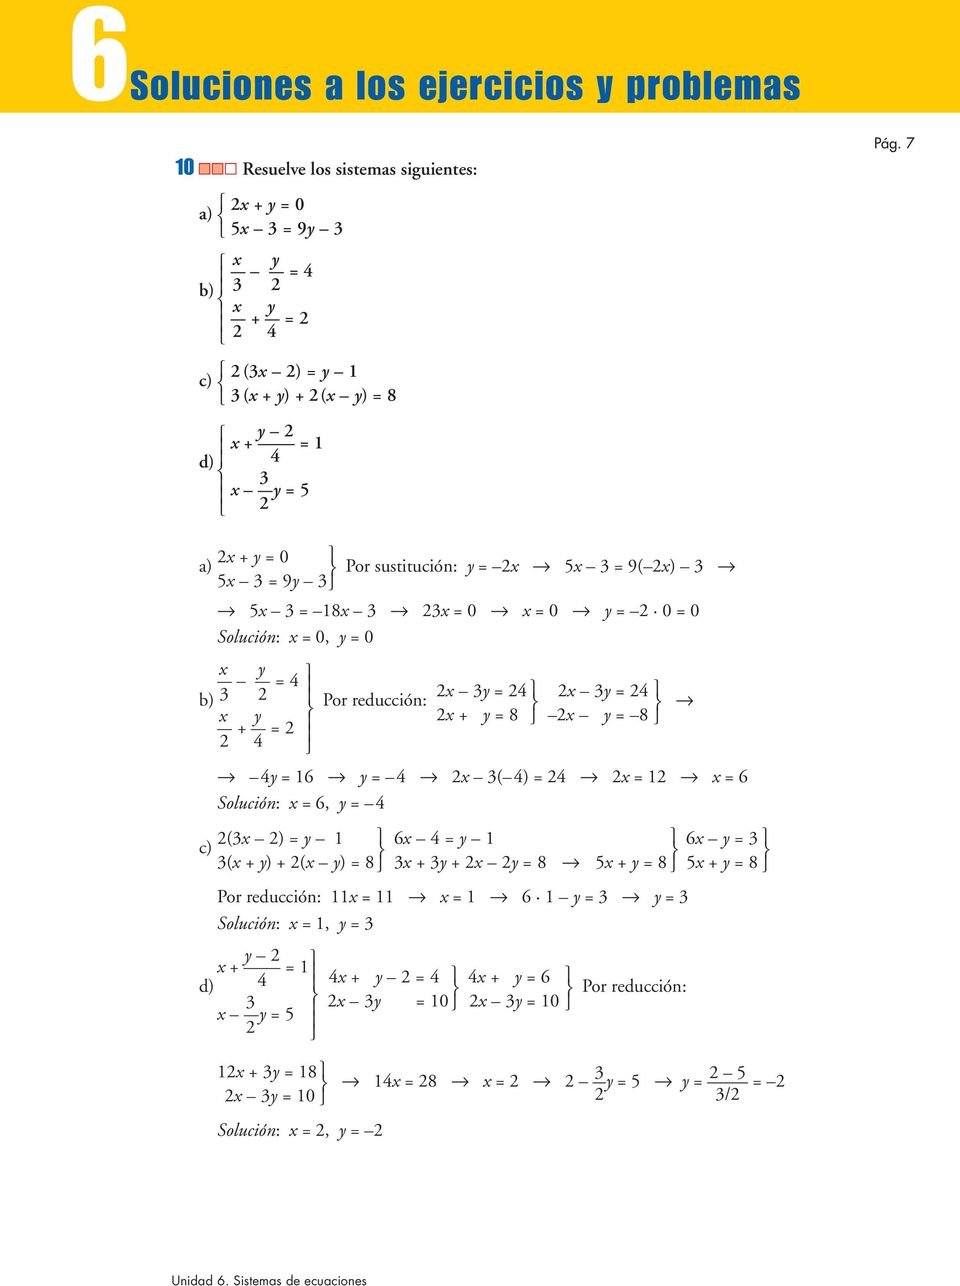 7 x + y = 0 a) Por sustitución: y = x 5x 3 = 9( x) 3 5x 3 = 9y 3 5x 3 = x 3 3x = 0 x = 0 y = 0 = 0 Solución: x = 0, y = 0 x y = 4 x 3y = 4 b) 3 x 3y = 4 Por reducción: x y x + y